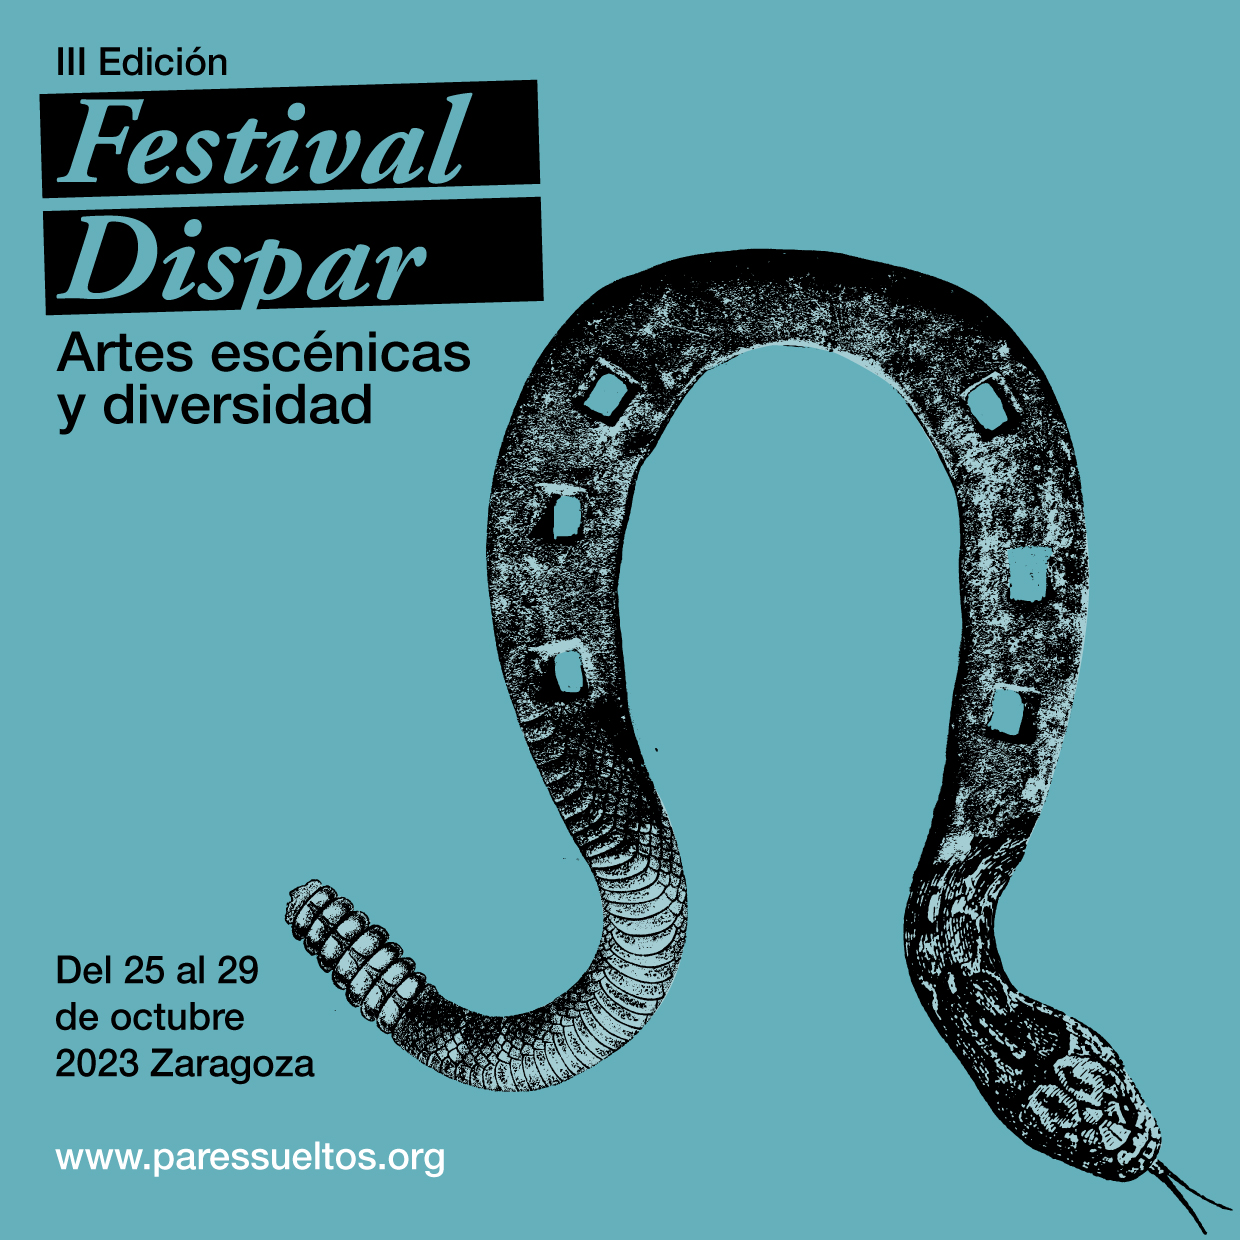 Cartel del Festival Dispar, 25 al 29 de octubre en Zaragoza, con un montaje de una herradura con una serpiente